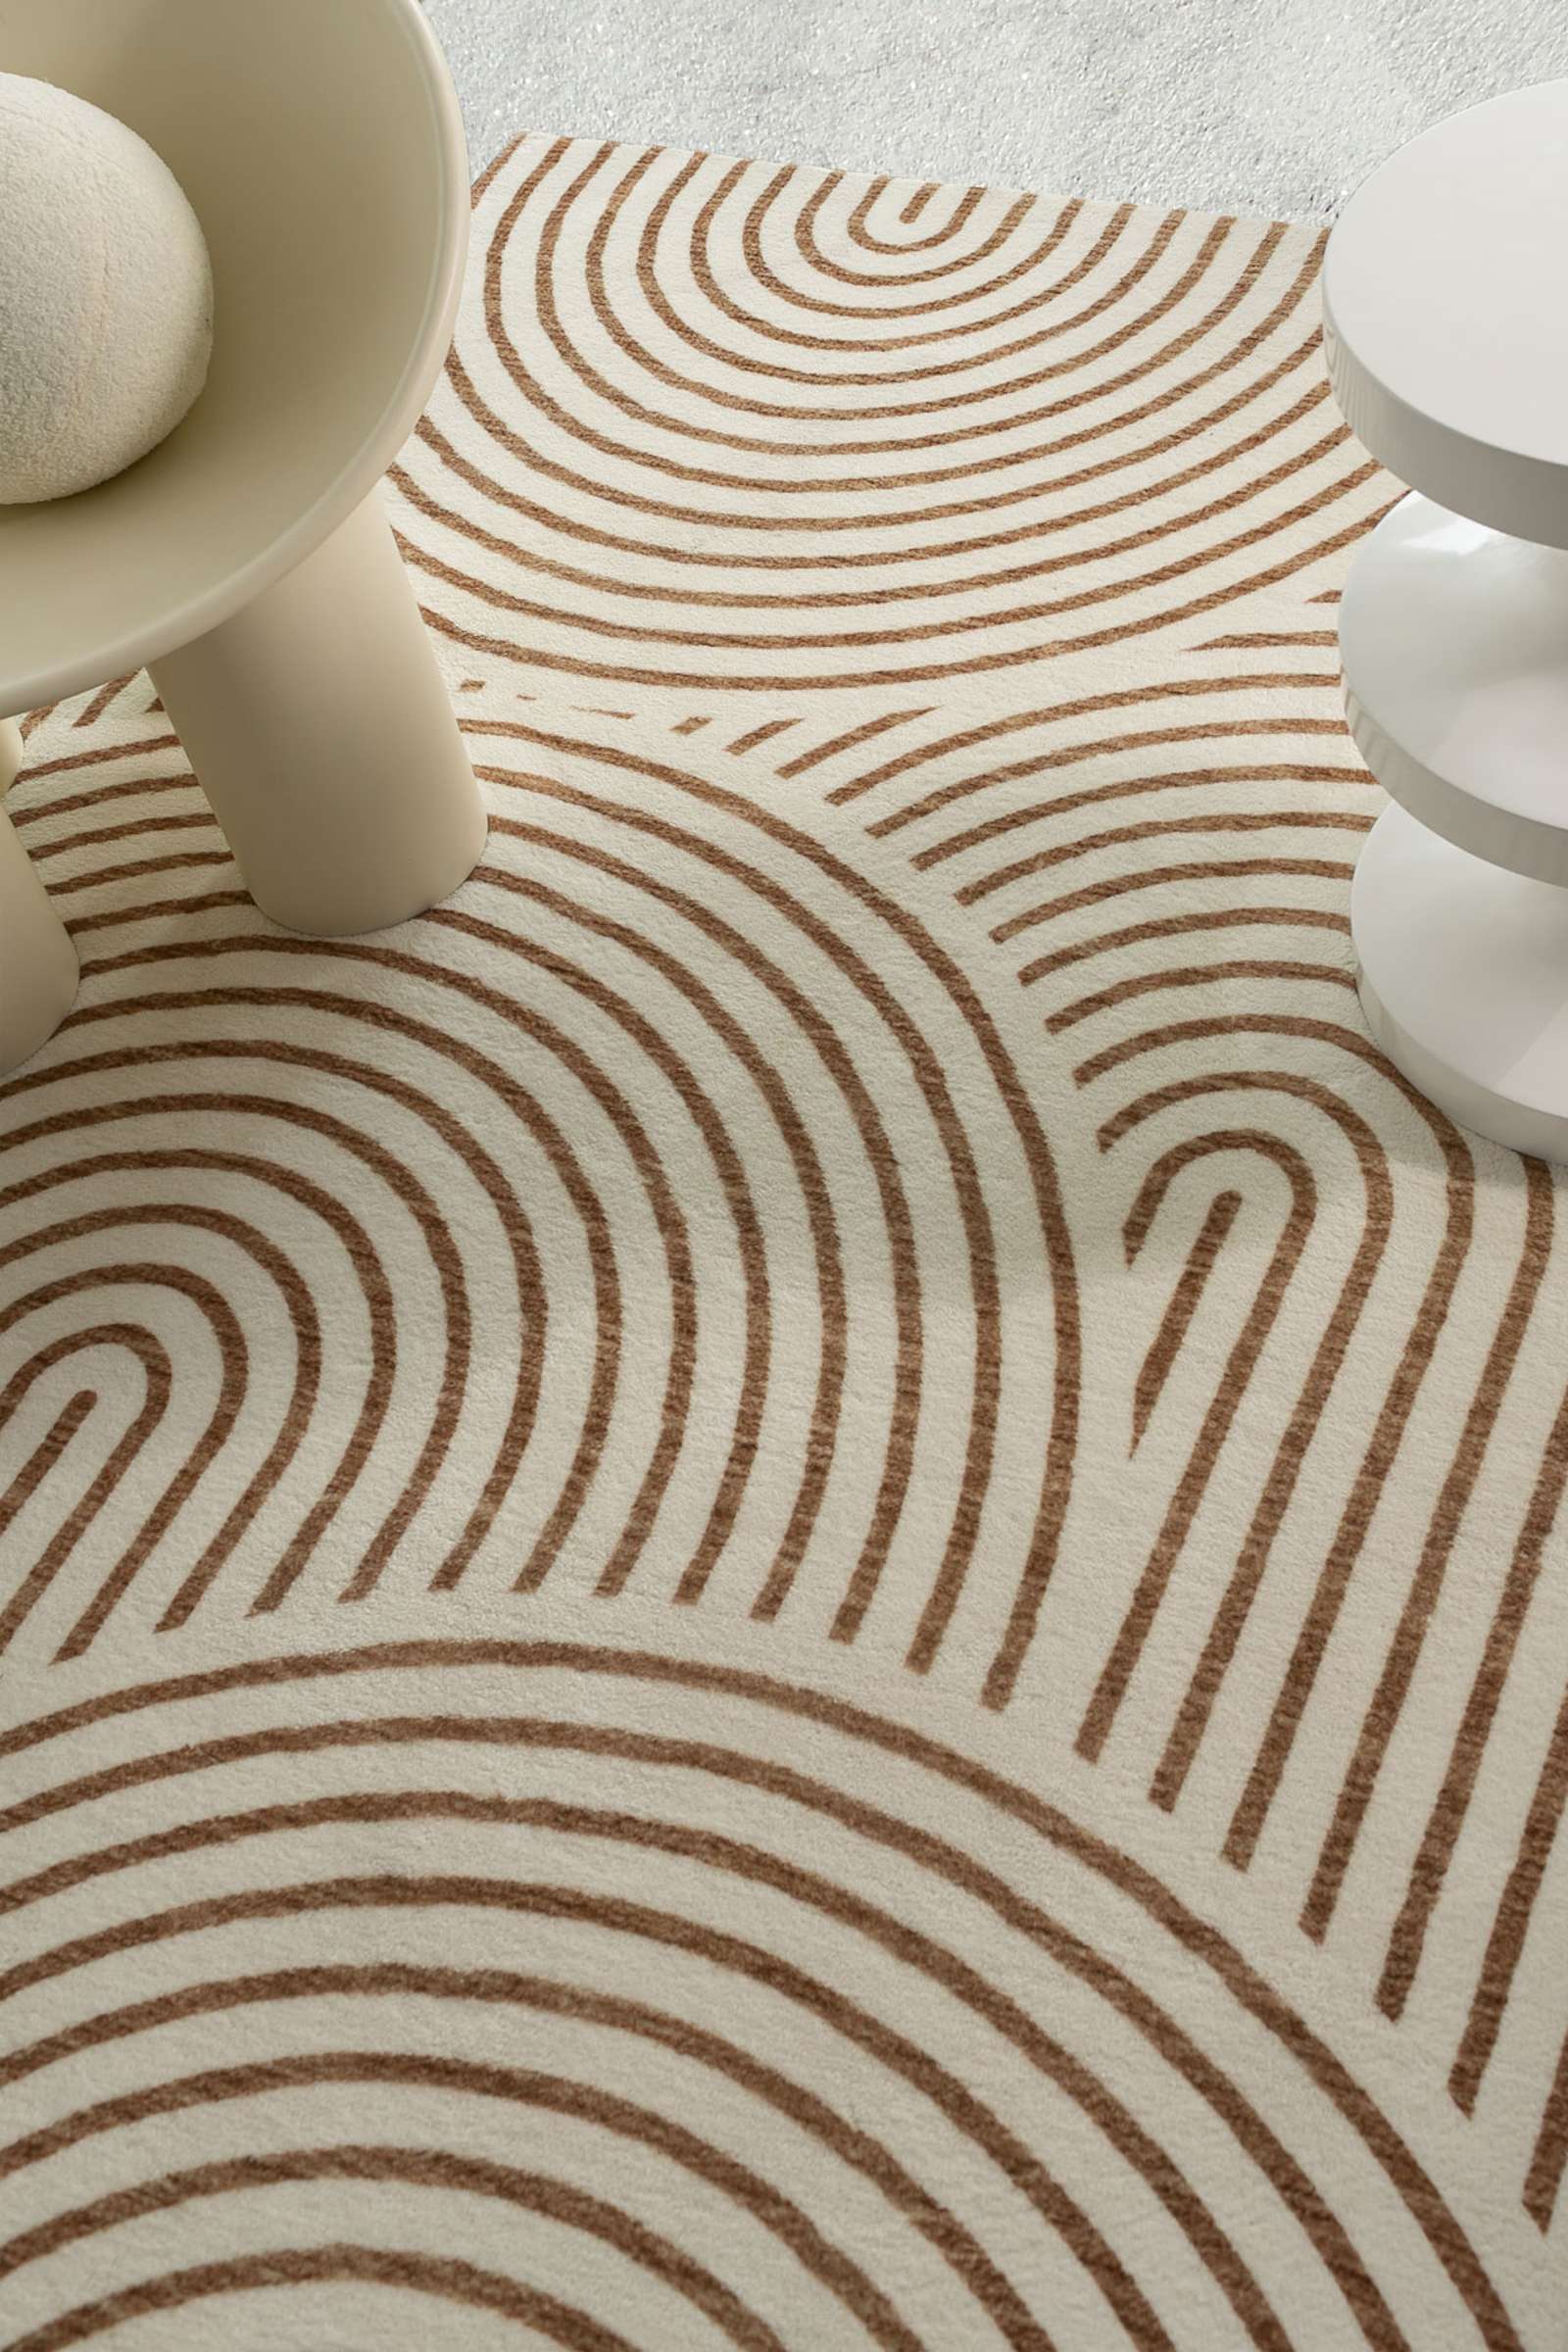 files/loopsie-rugs-abel-brown-and-cream-geometric-washable-rug-29951205048414.jpg